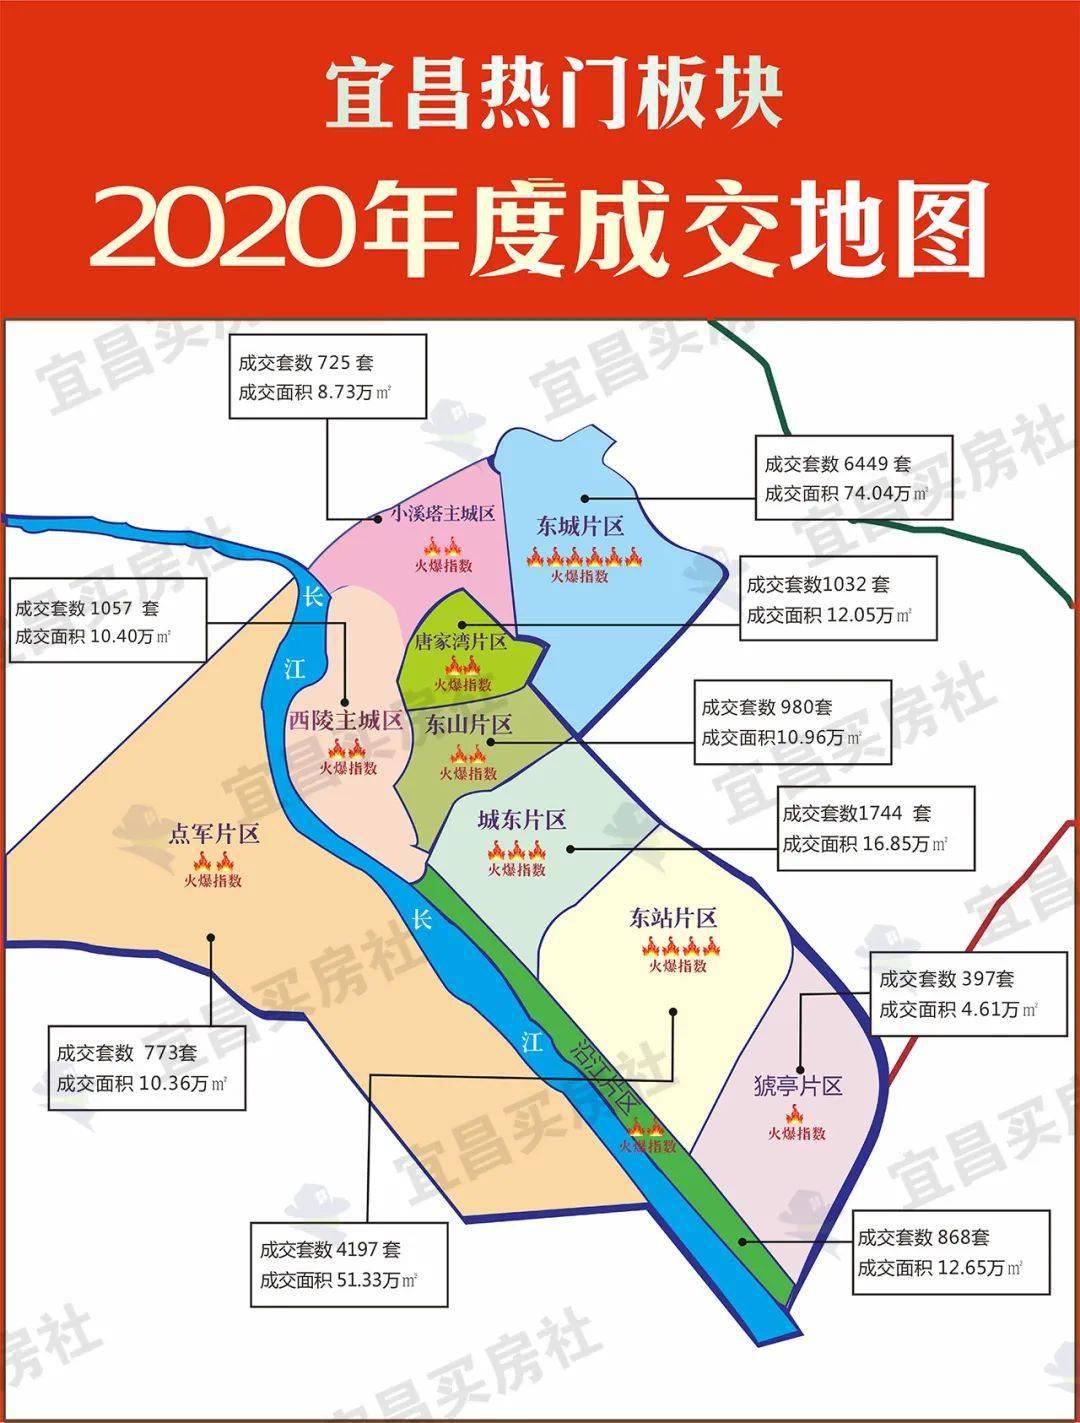 2020年宜昌房地产销售top10排行榜